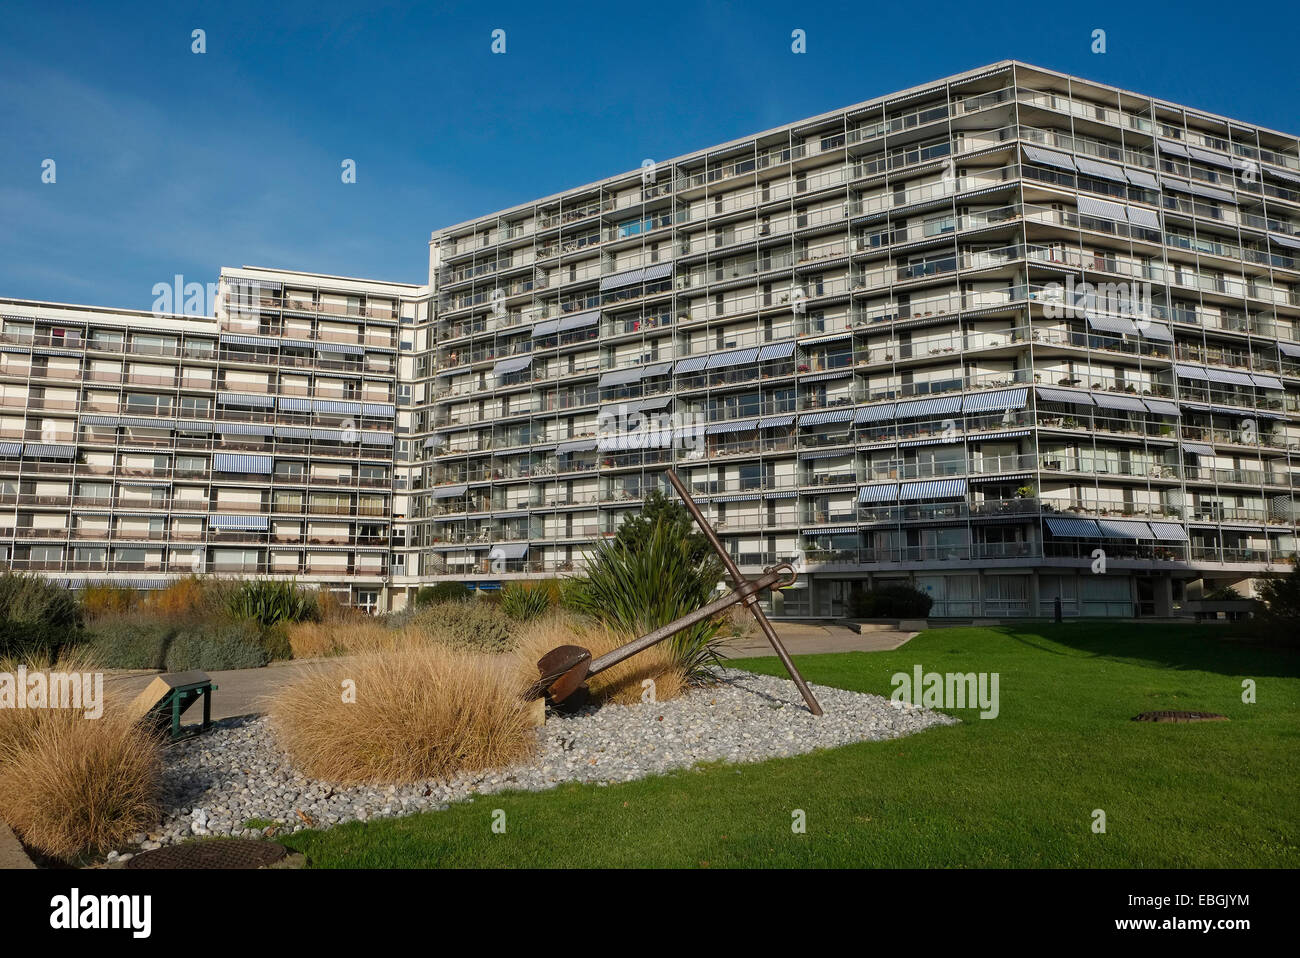 Immeuble d'appartements, le havre, Normandie, France Banque D'Images